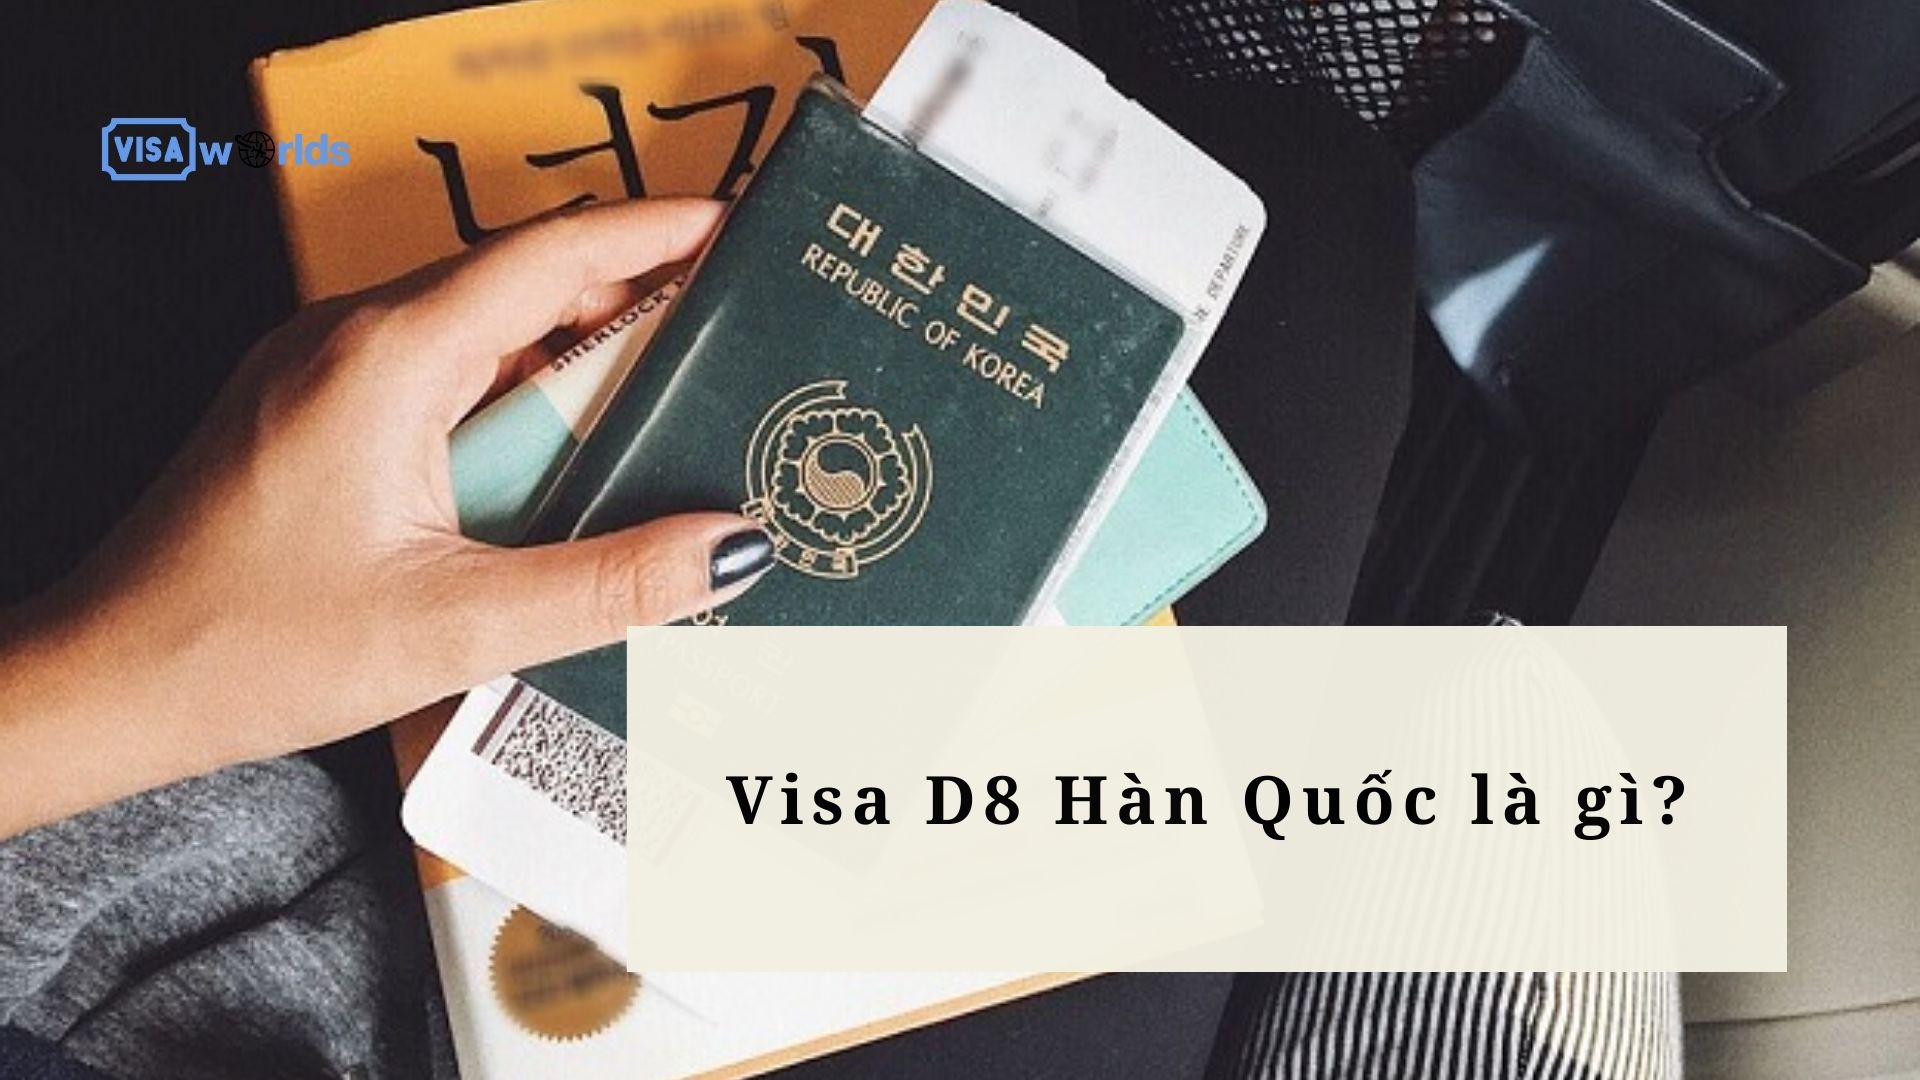 Visa D8 Hàn Quốc là gì